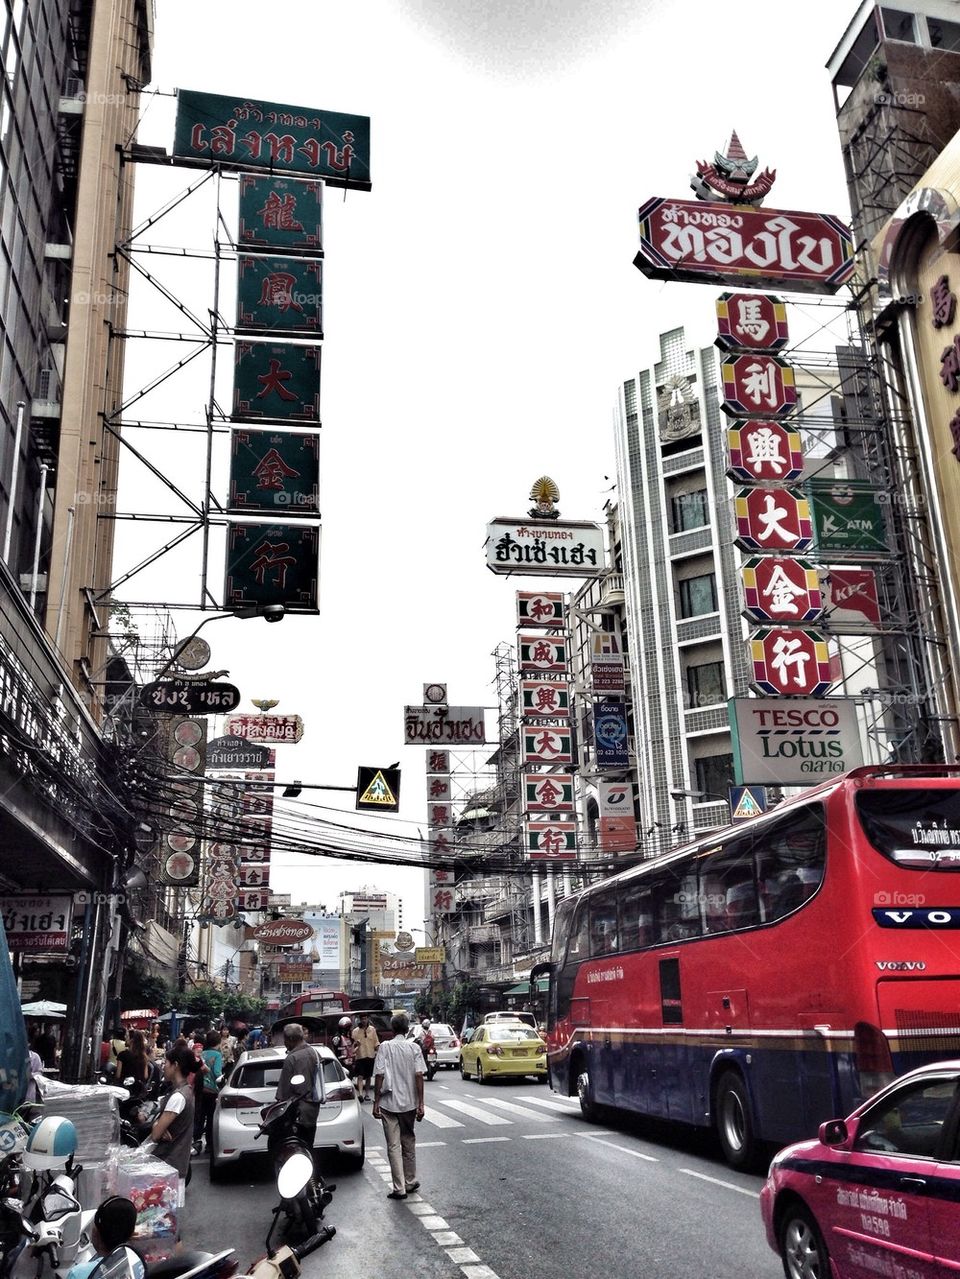 China town in Bangkok, Thailand